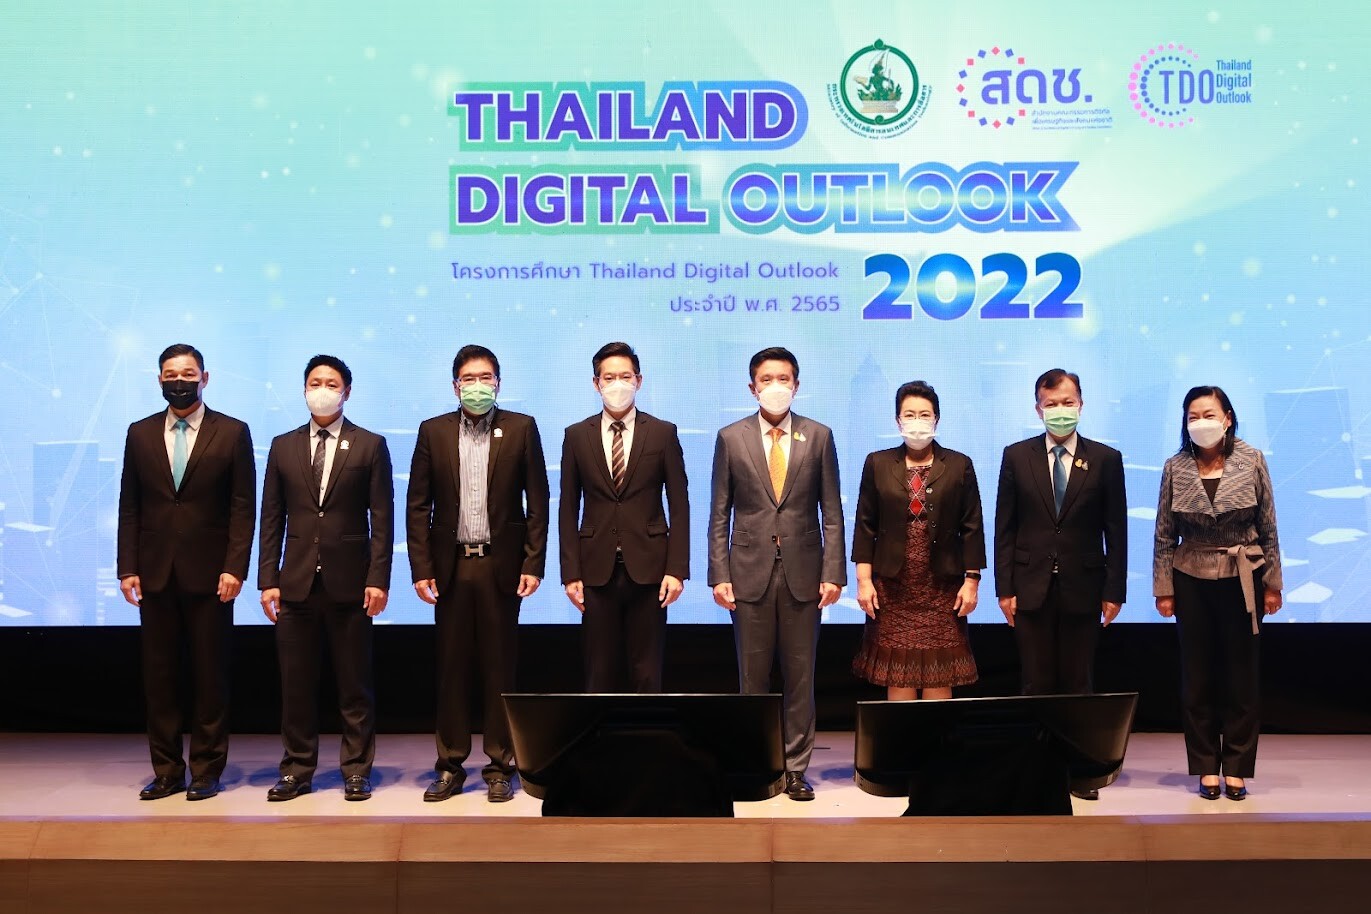 ดีอีเอส เผยผลสำรวจ Thailand Digital Outlook พบการเข้าถึงอินเทอร์เน็ตของครัวเรือนไทยเพิ่มขึ้น ย้ำบูรณาการข้อมูลสถิติดิจิทัลของประเทศ